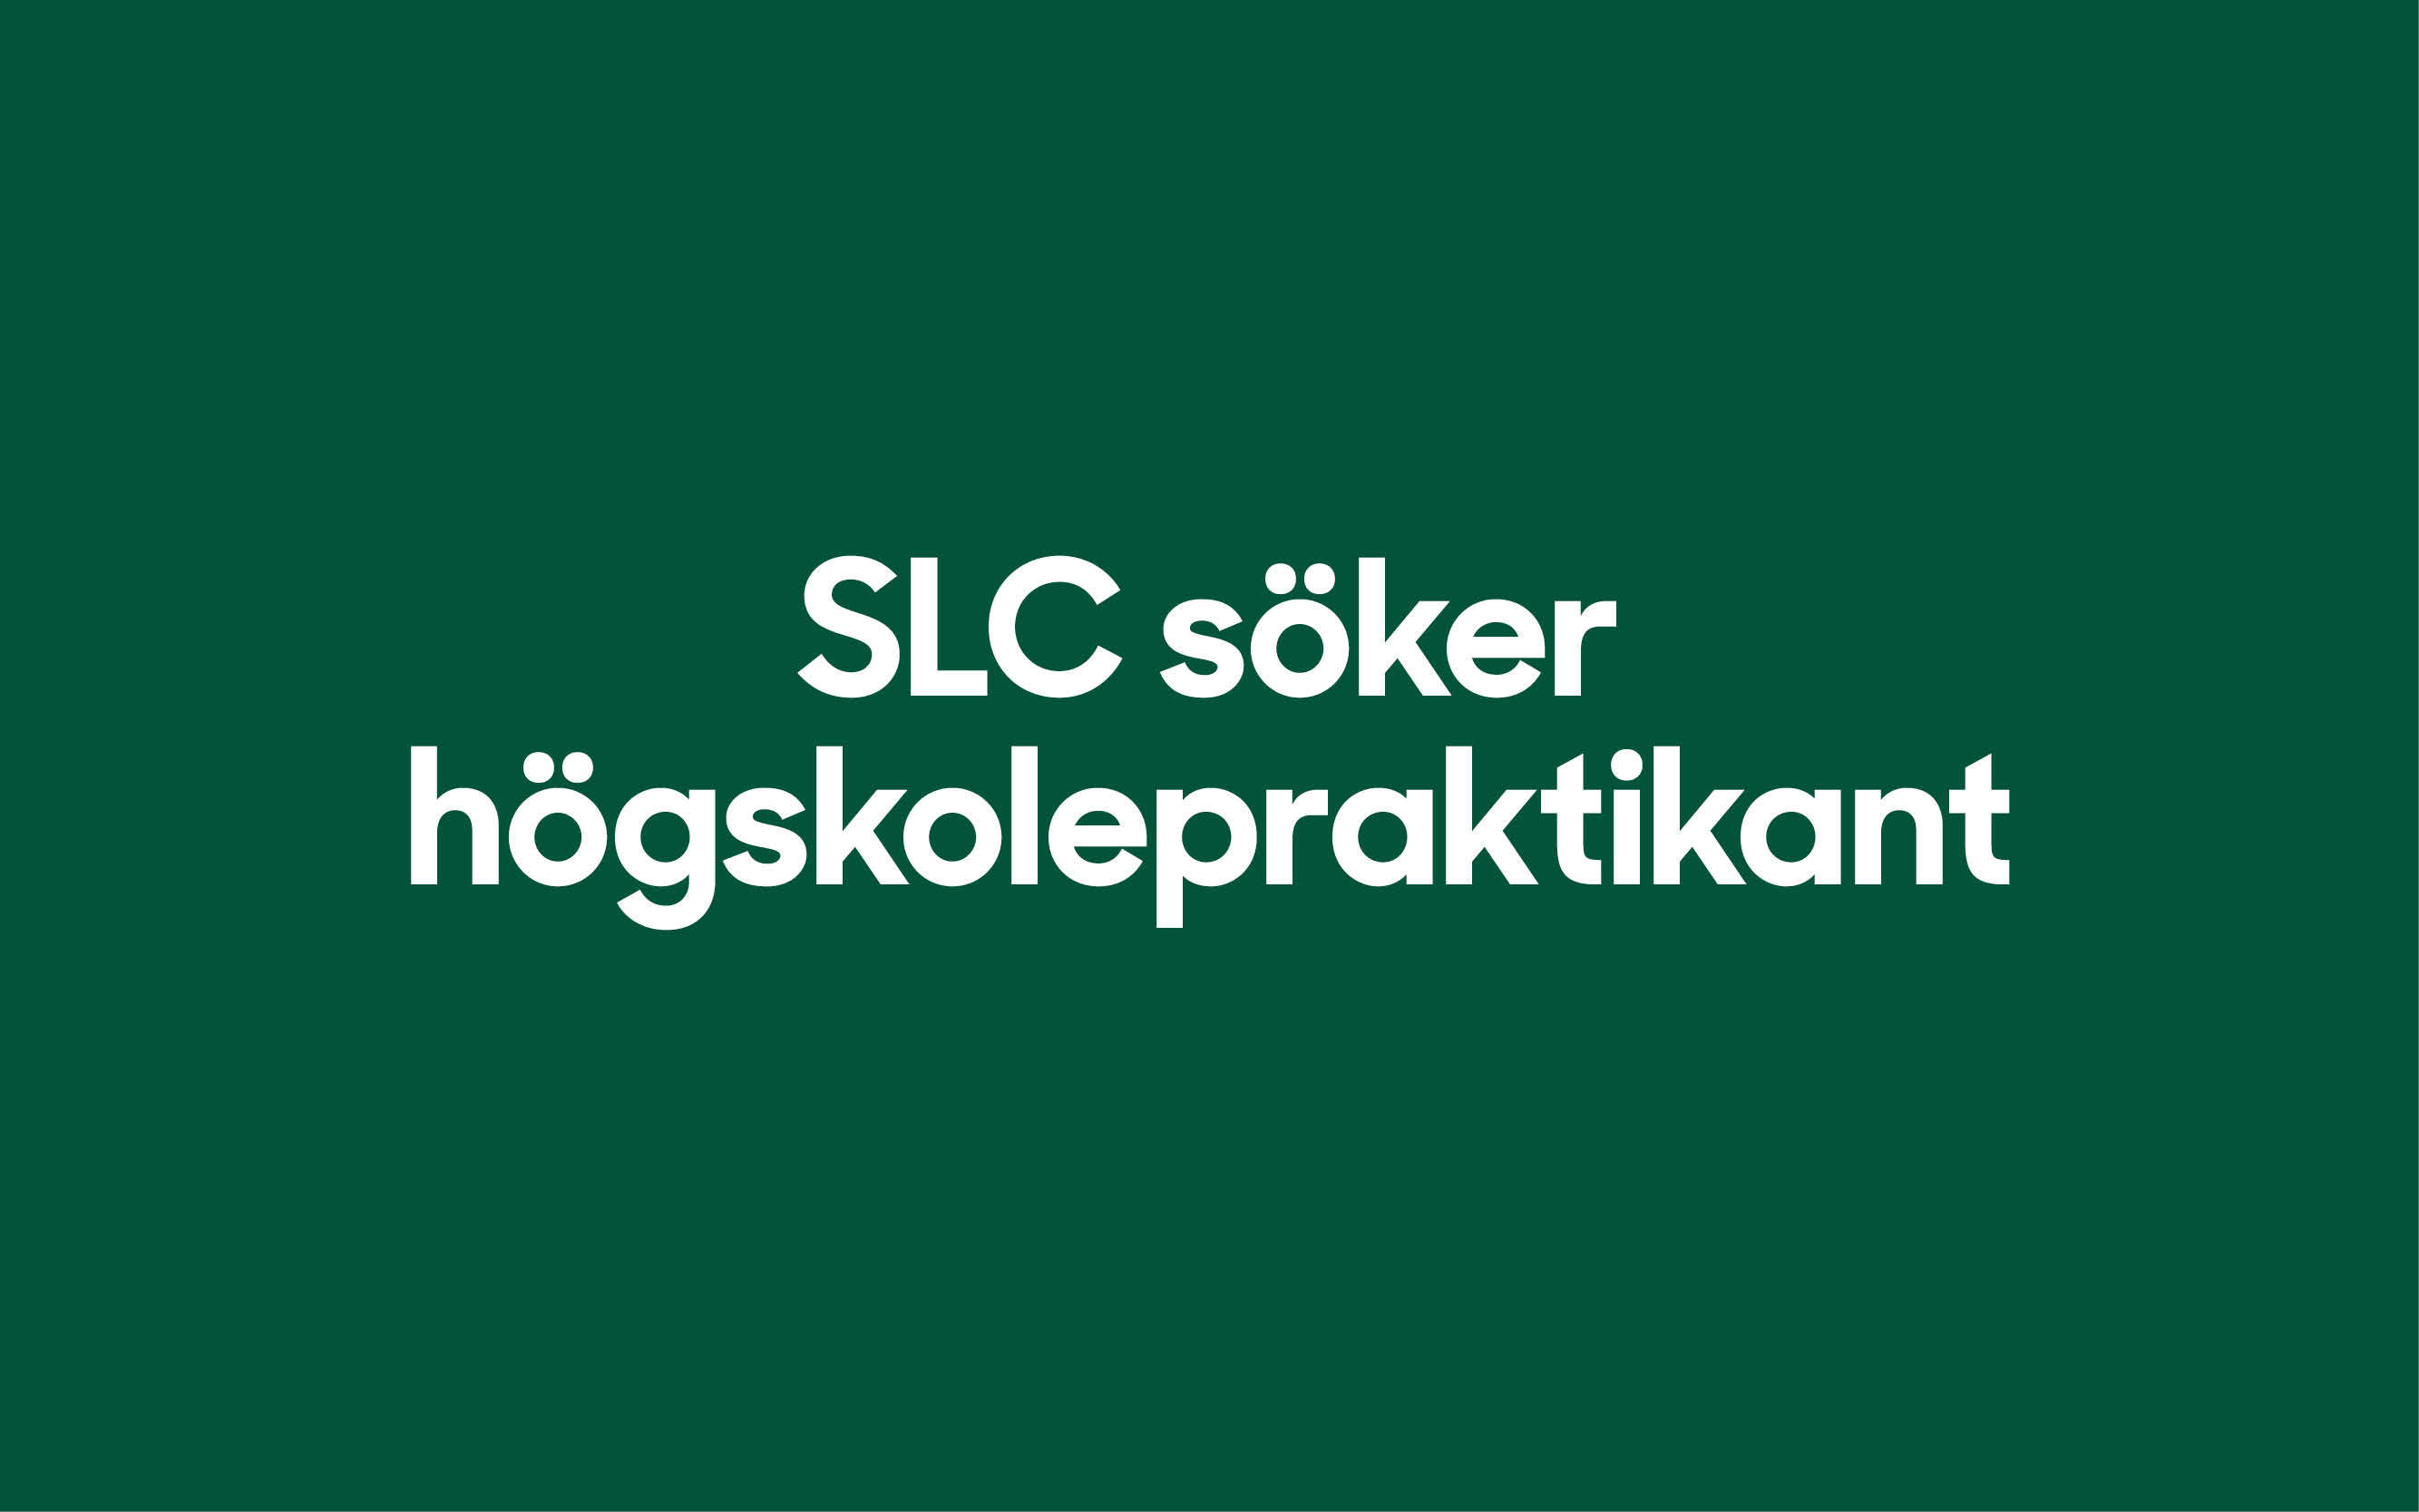 SLC - SLC soker hogskolepraktikant webbanner 20222